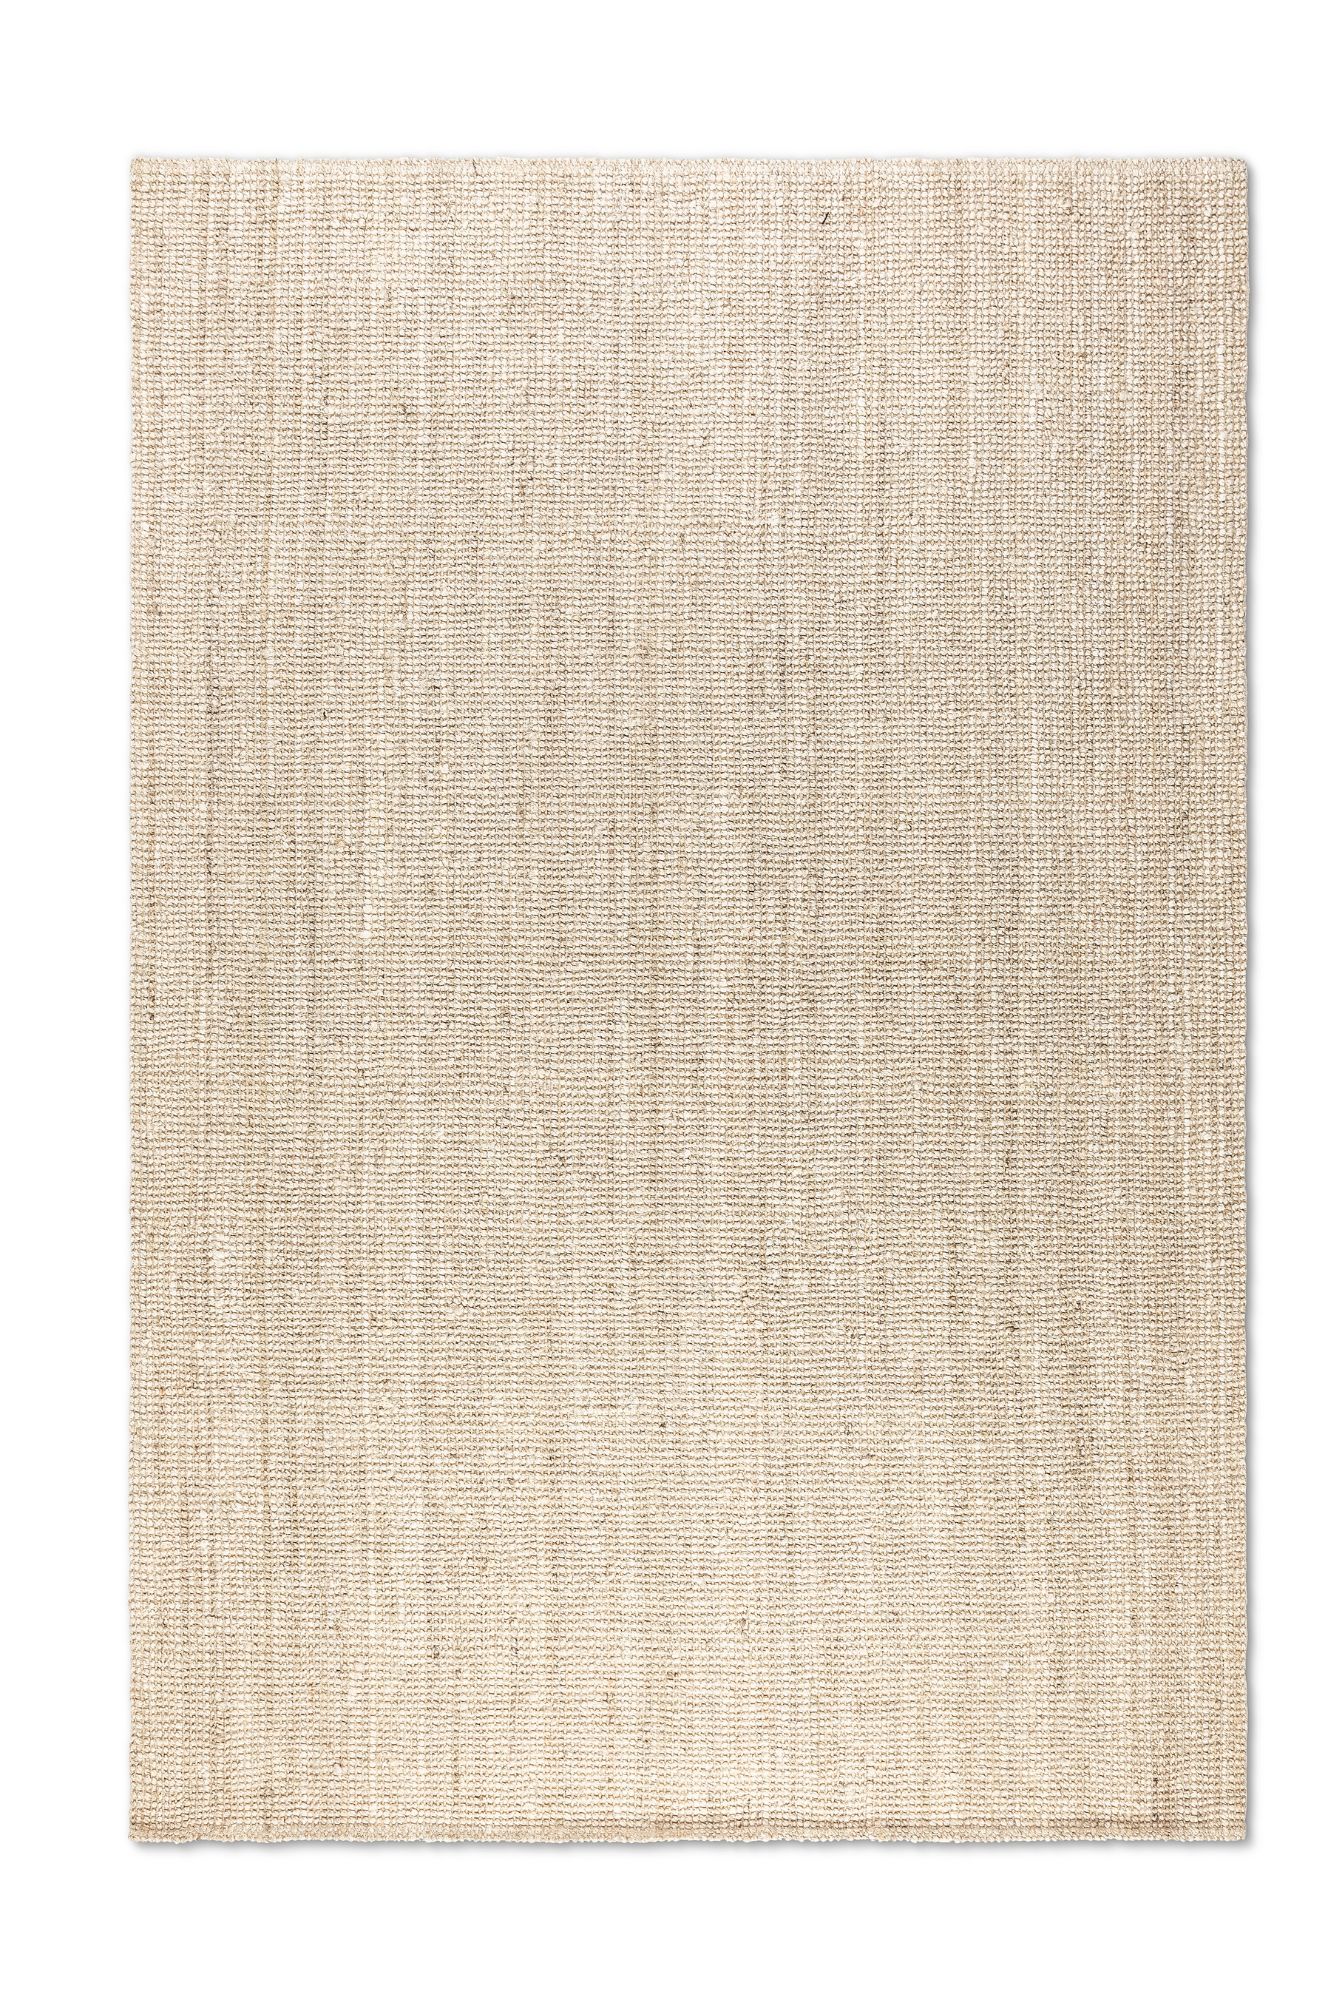 Hanse Home Jute Teppich – Natur Wohnzimmerteppich aus 100% Jute - Handgewebt & Umweltfreundlich – Boho Naturfaser Juteteppich für Wohnzimmer, Schlafzimmer, Esszimmer – Naturweiß Ivory, 80x150cm